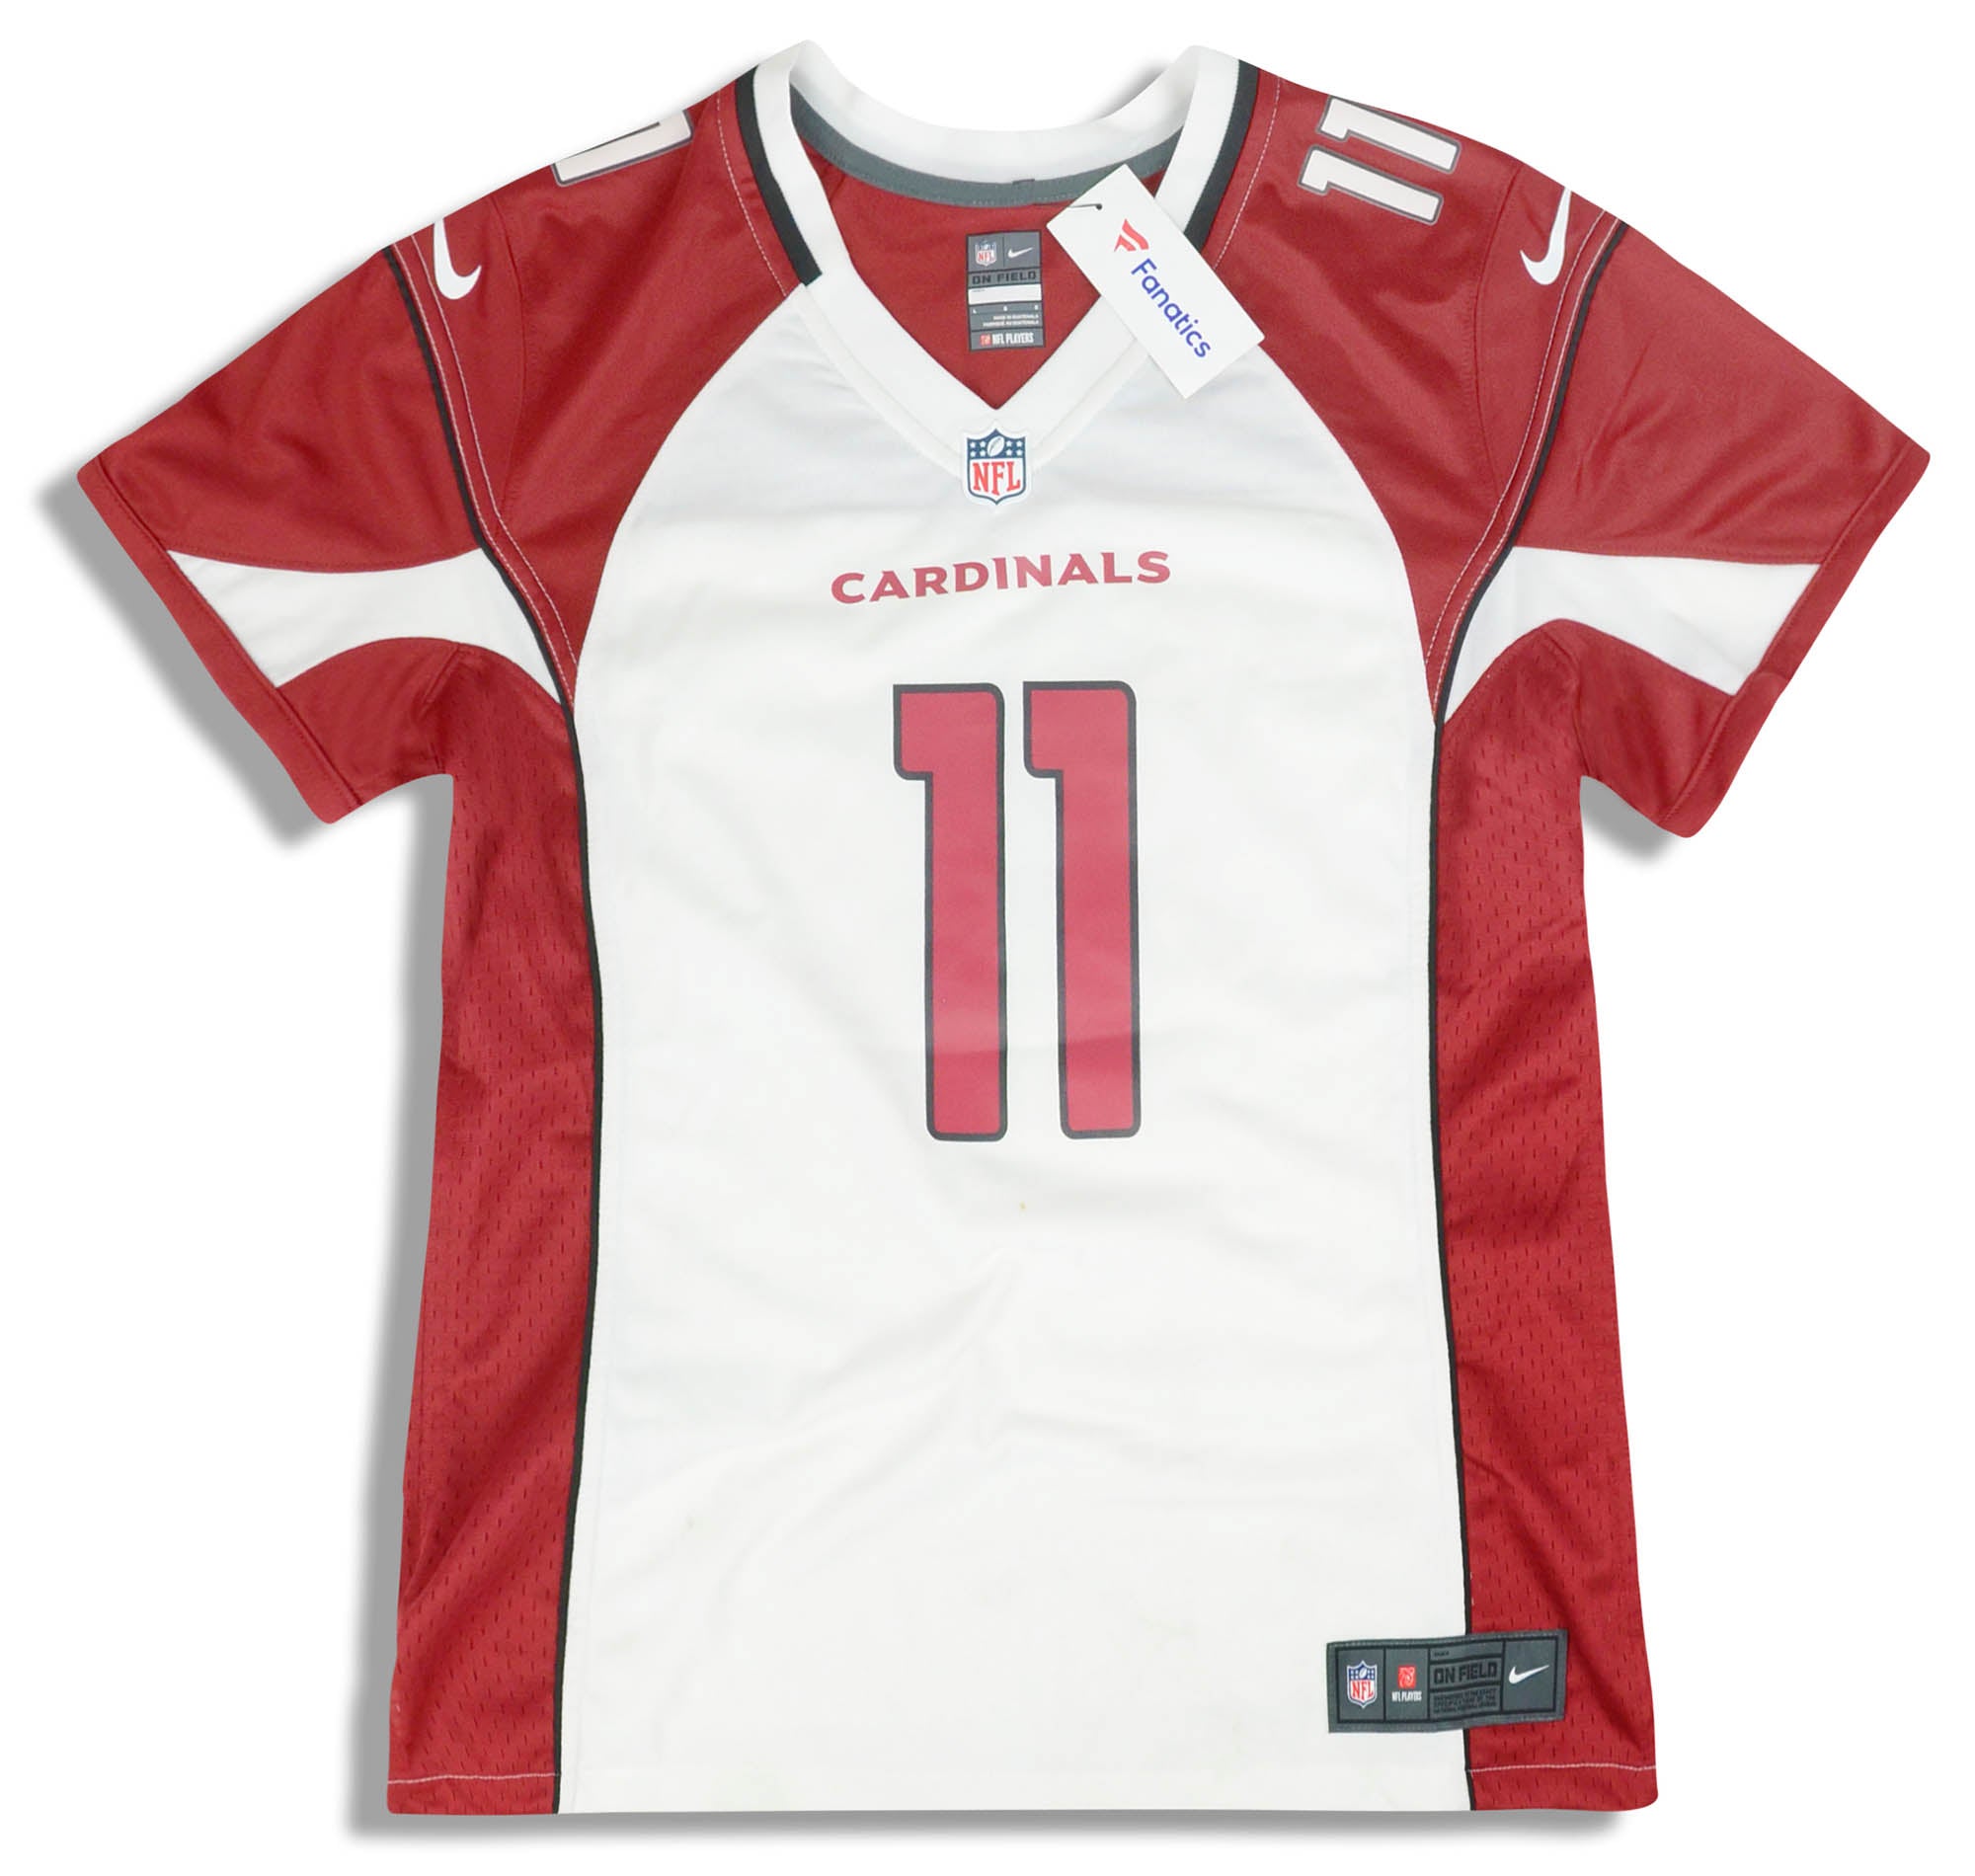 arizona cardinals football jersey